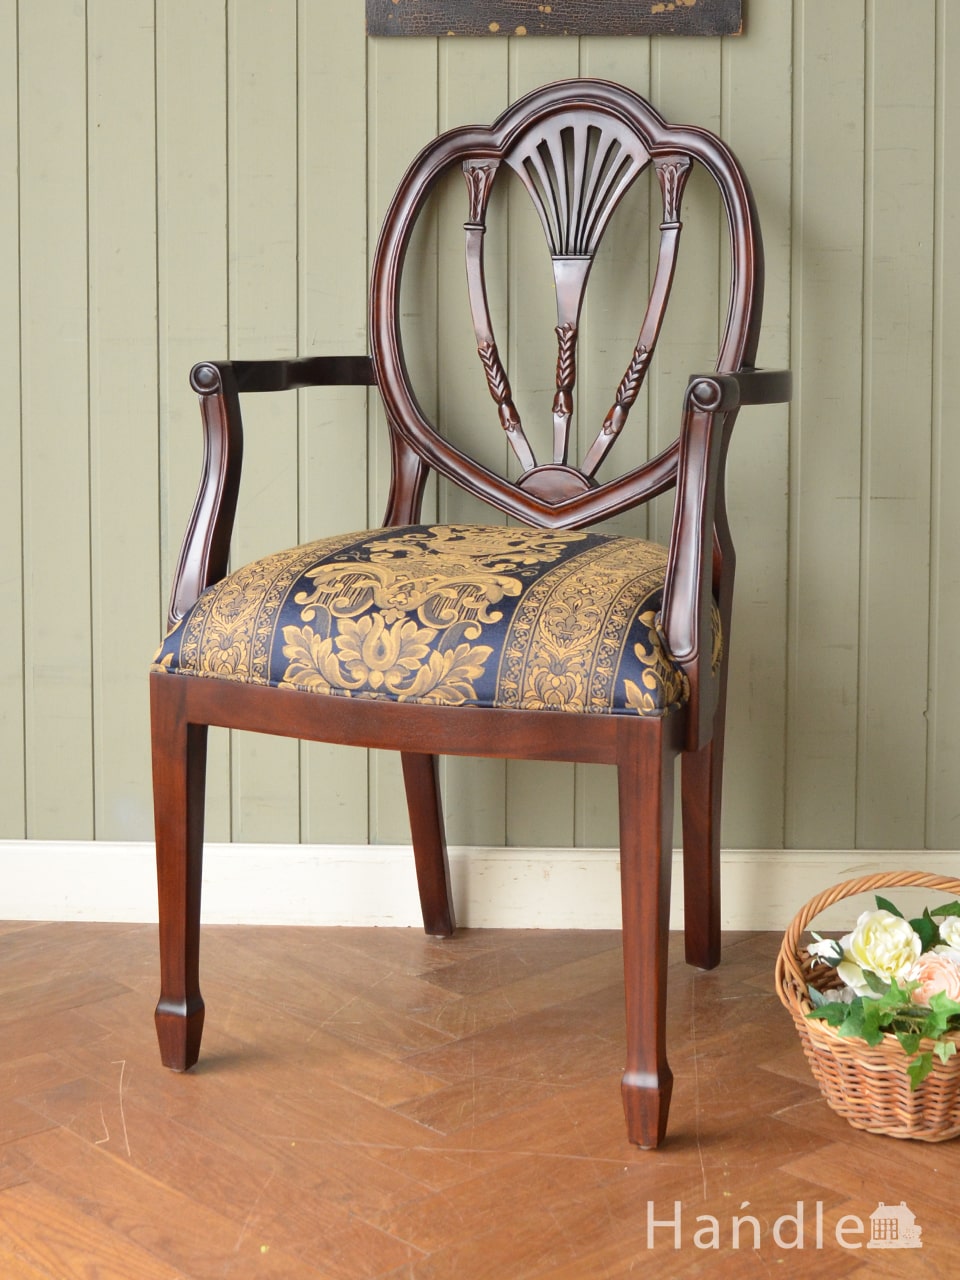 アンティーク風のおしゃれな椅子、背もたれの装飾が美しいアーム付きの